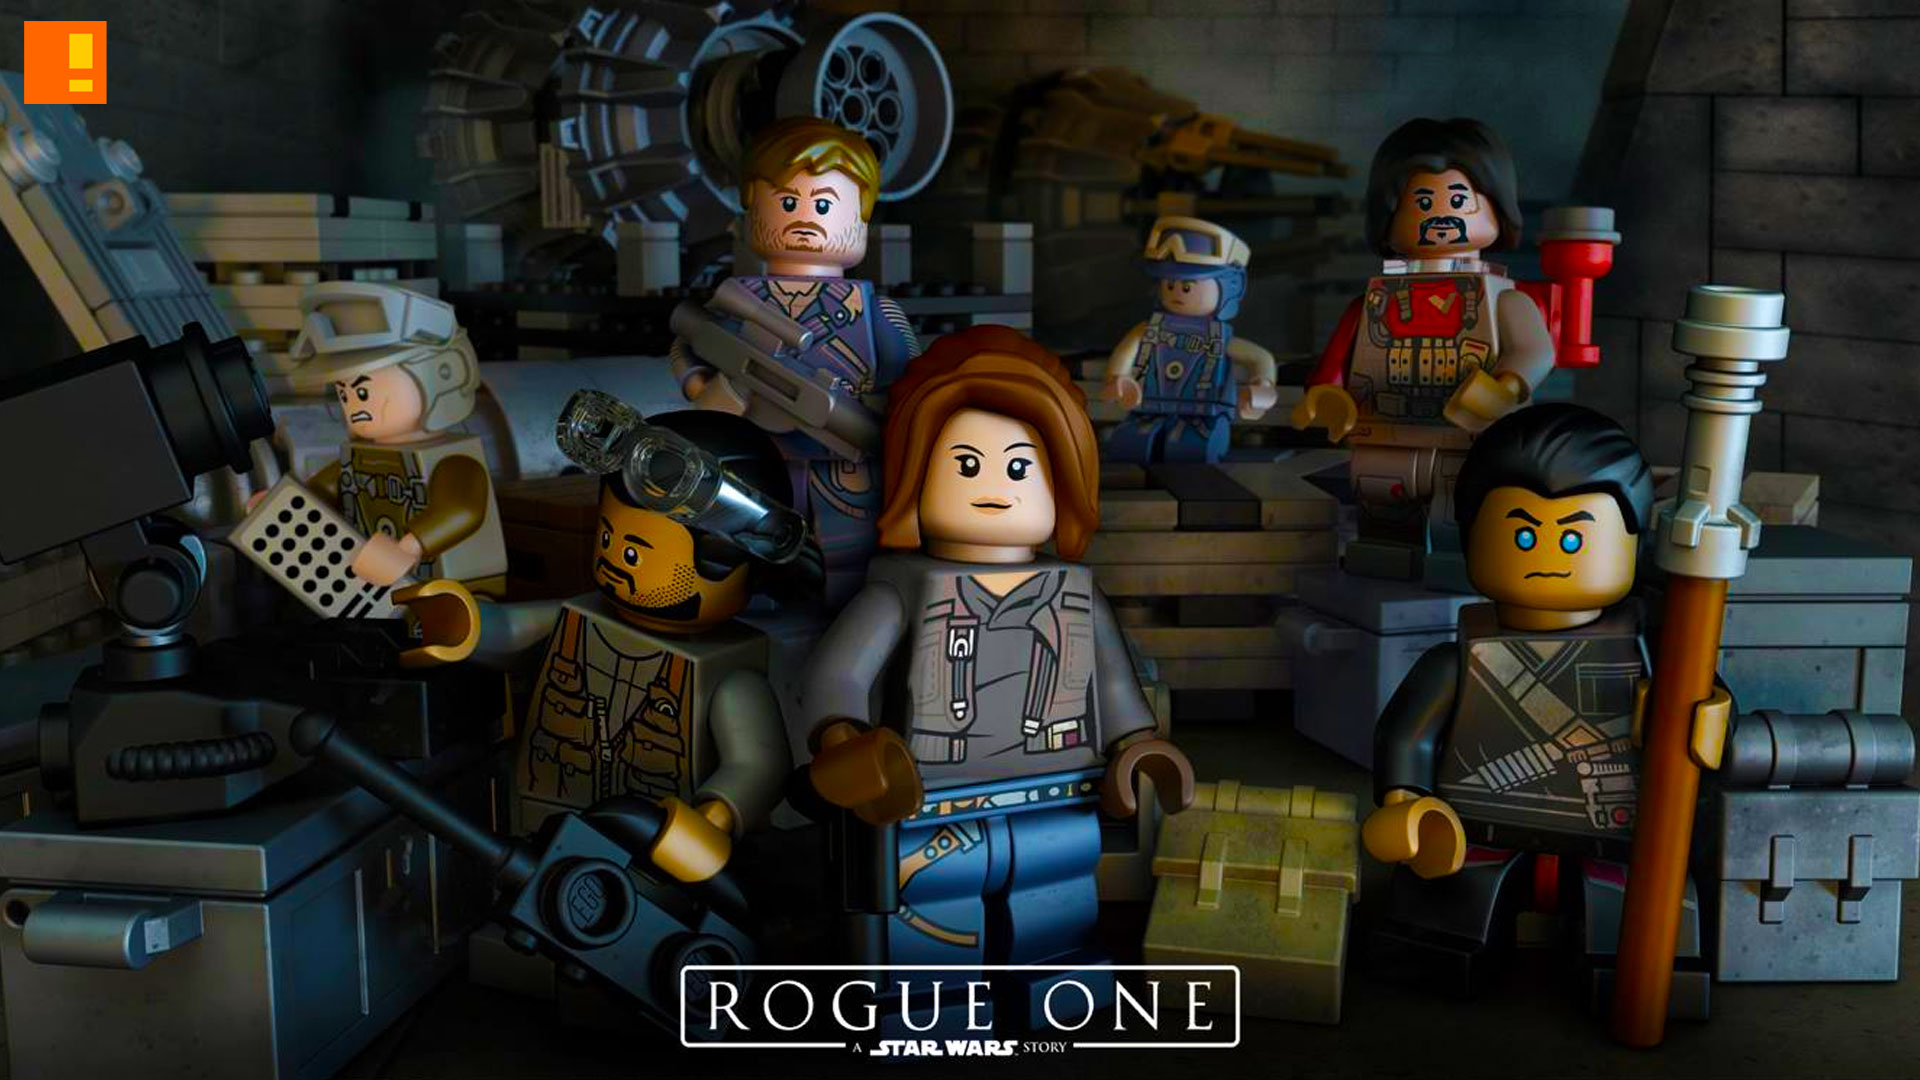 Star Wars: Rogue One Trailer Online 2016 Watch